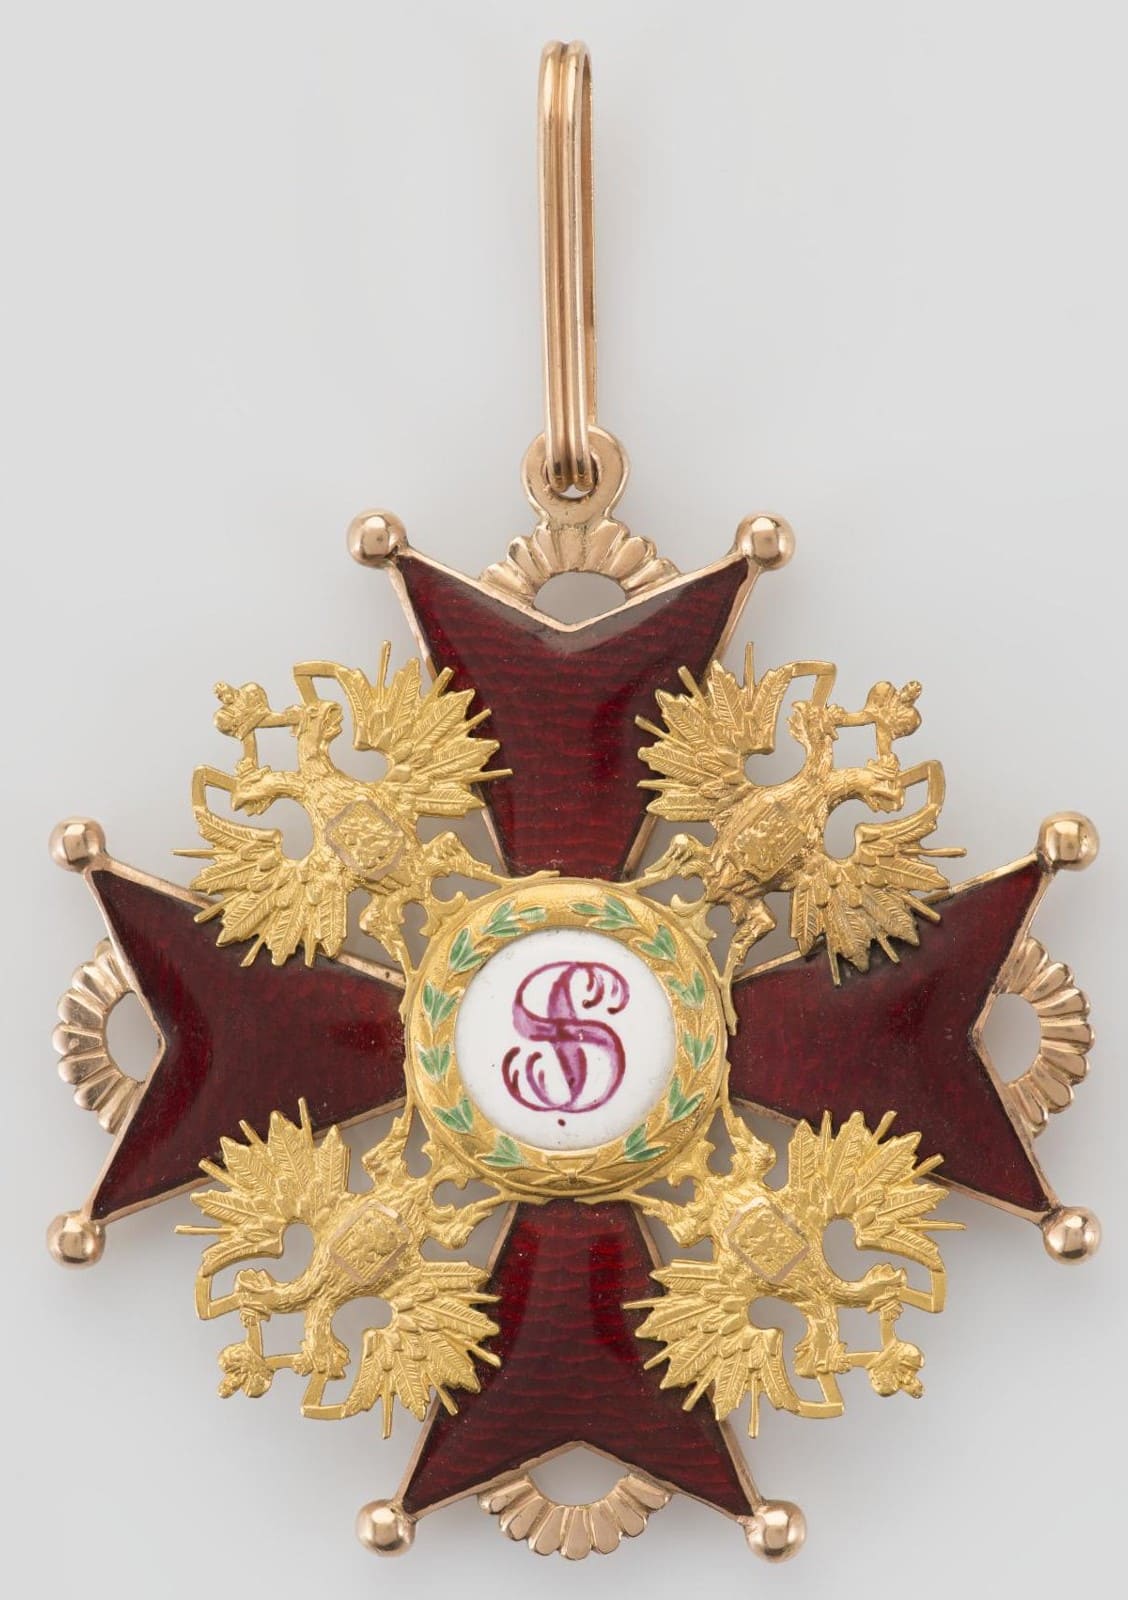 Орден Святого Станислава 1-й степени IK.jpg